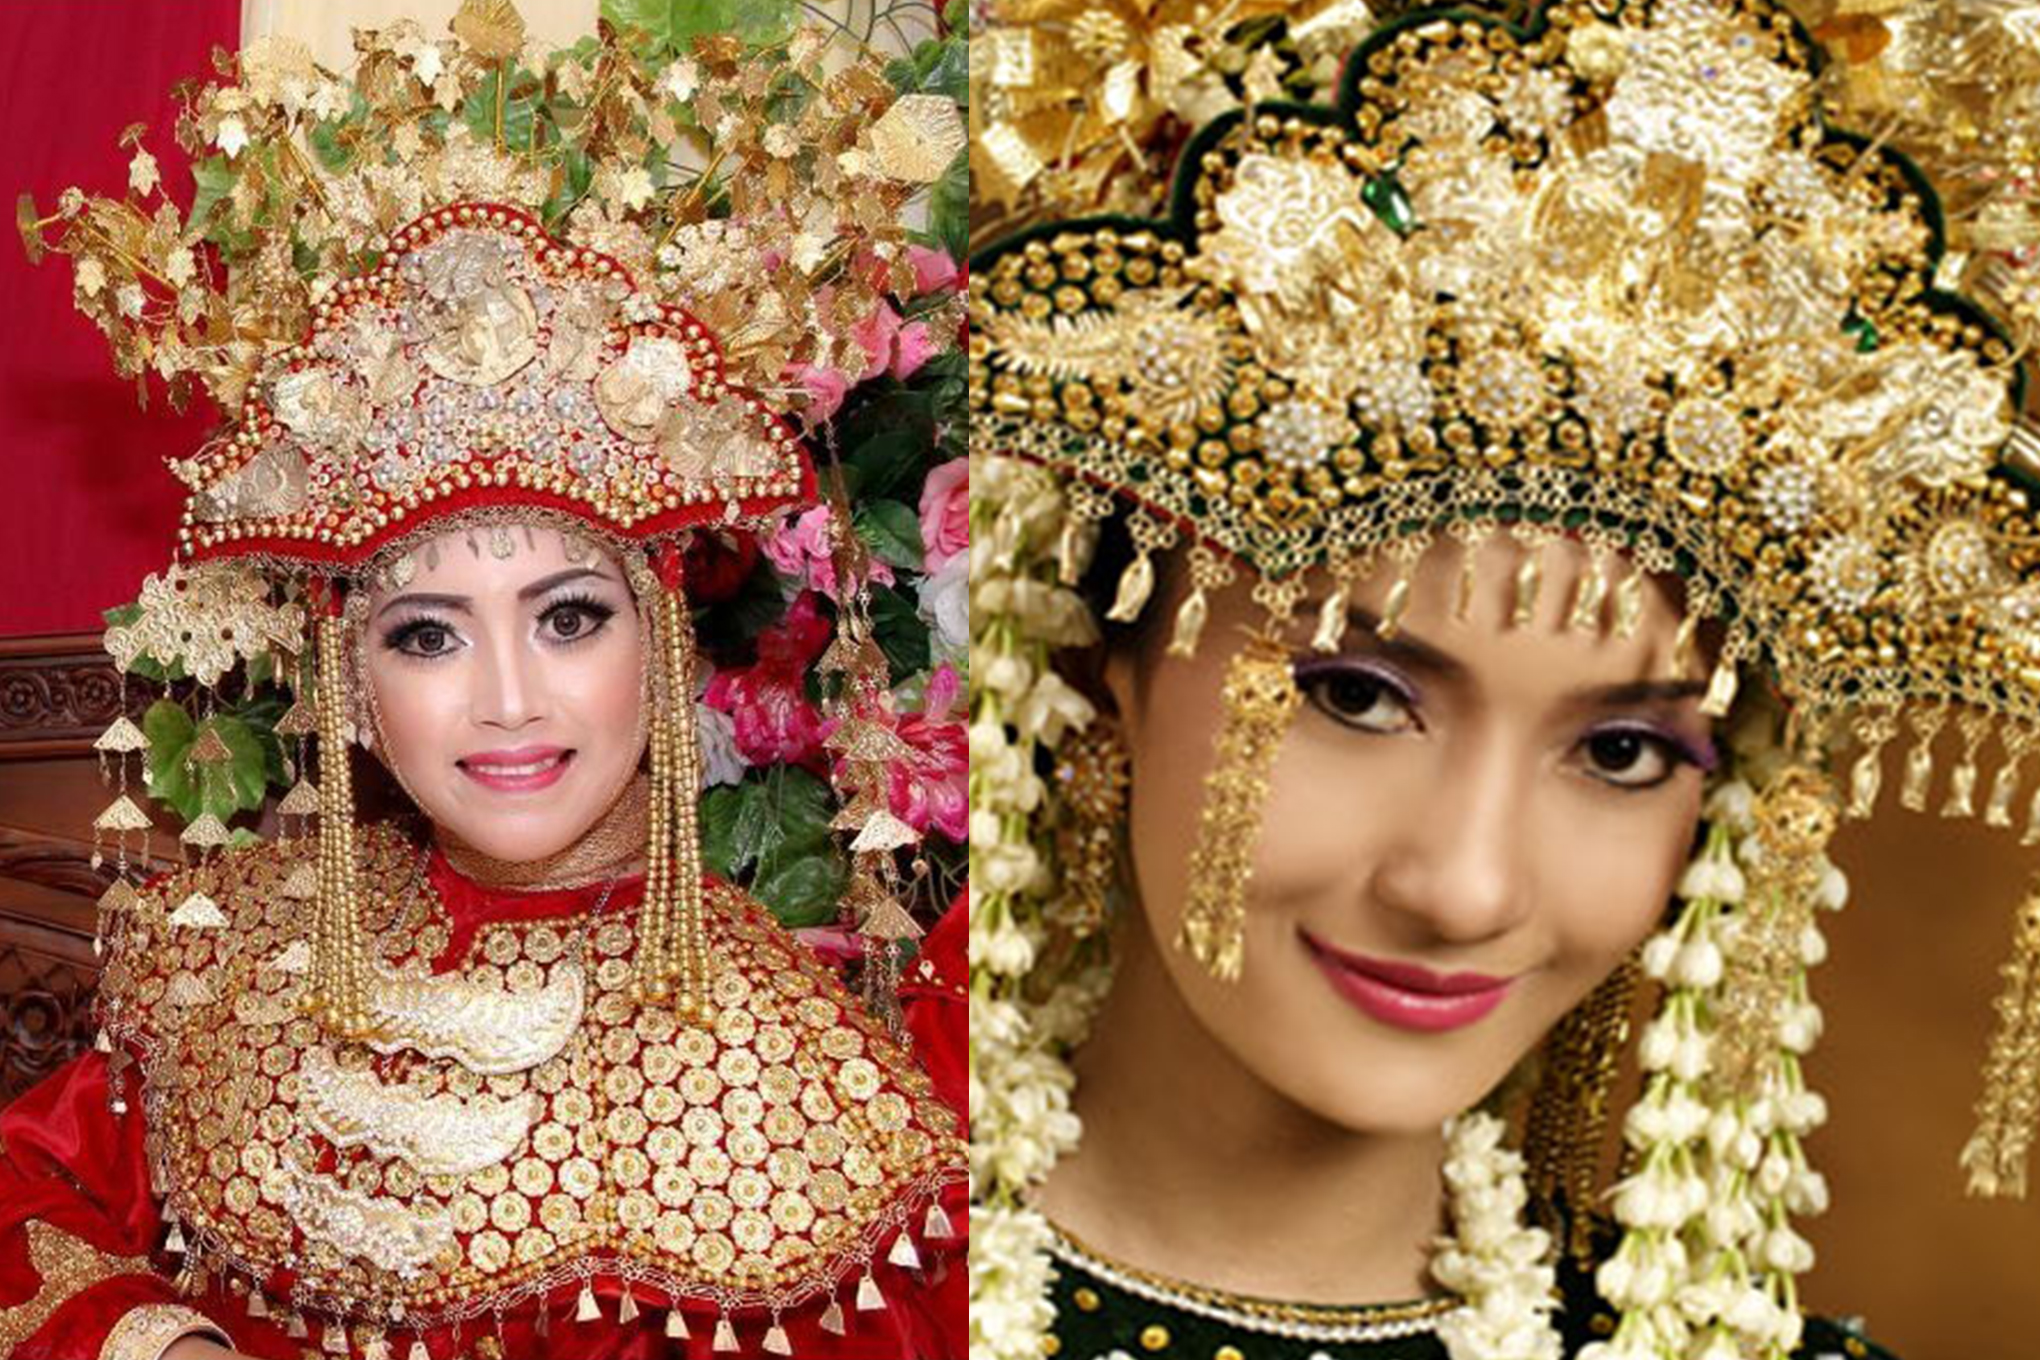 Mahkota paksian Bangka Belitung | Foto: hipwee.com